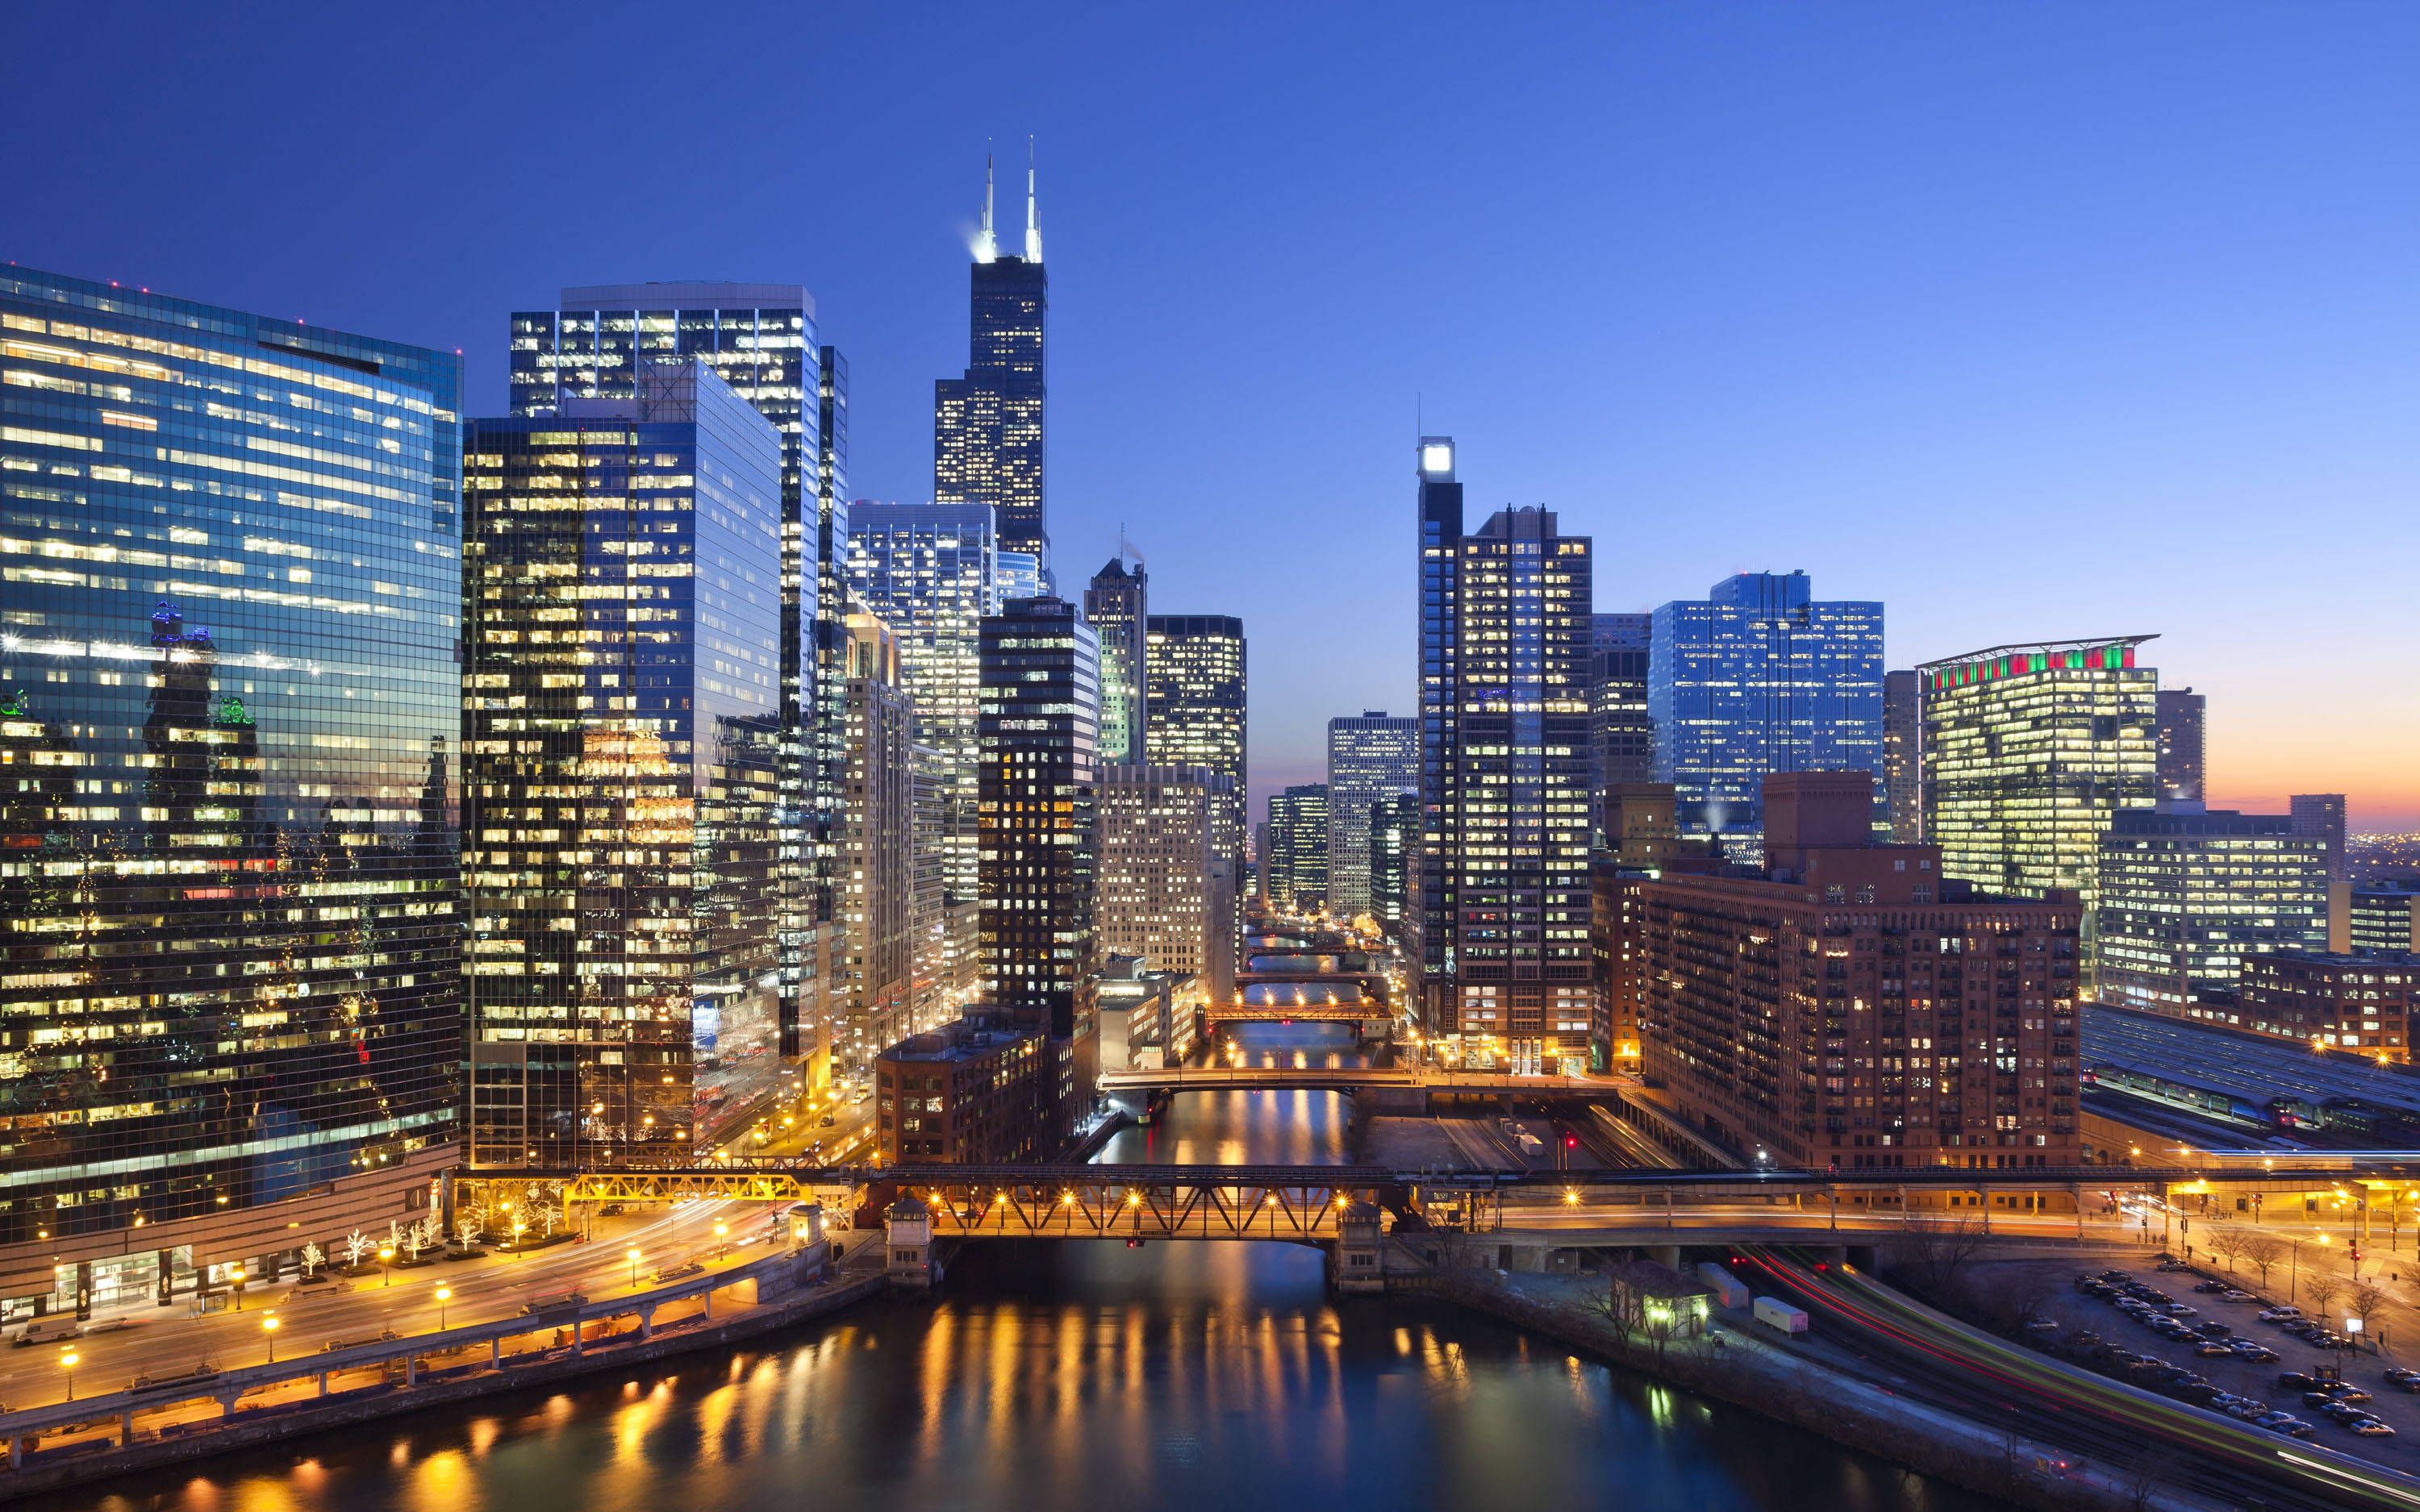 芝加哥城市市中心街道夜晚散步 芝加哥城市摩天大楼夜景灯光